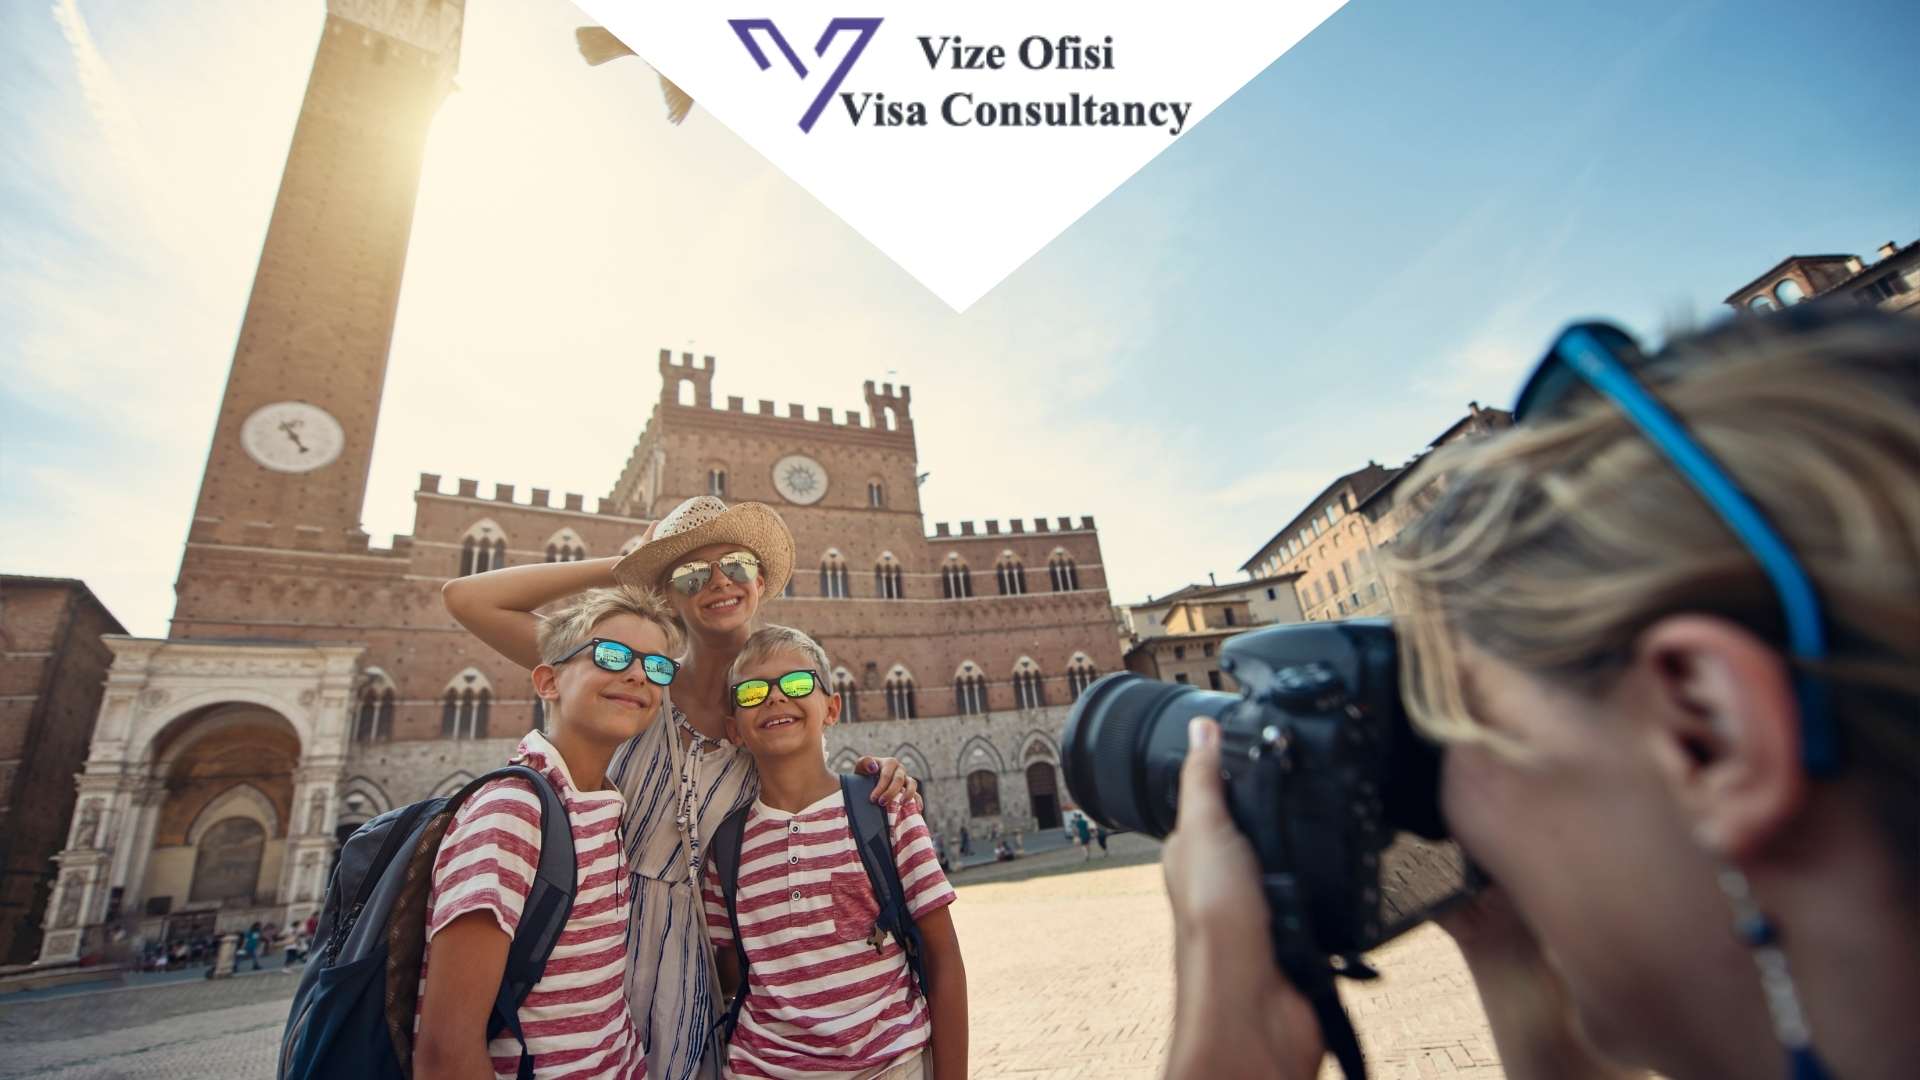 İtalya Aile-Arkadaş Ziyaret Vizesi Evrakları 2021